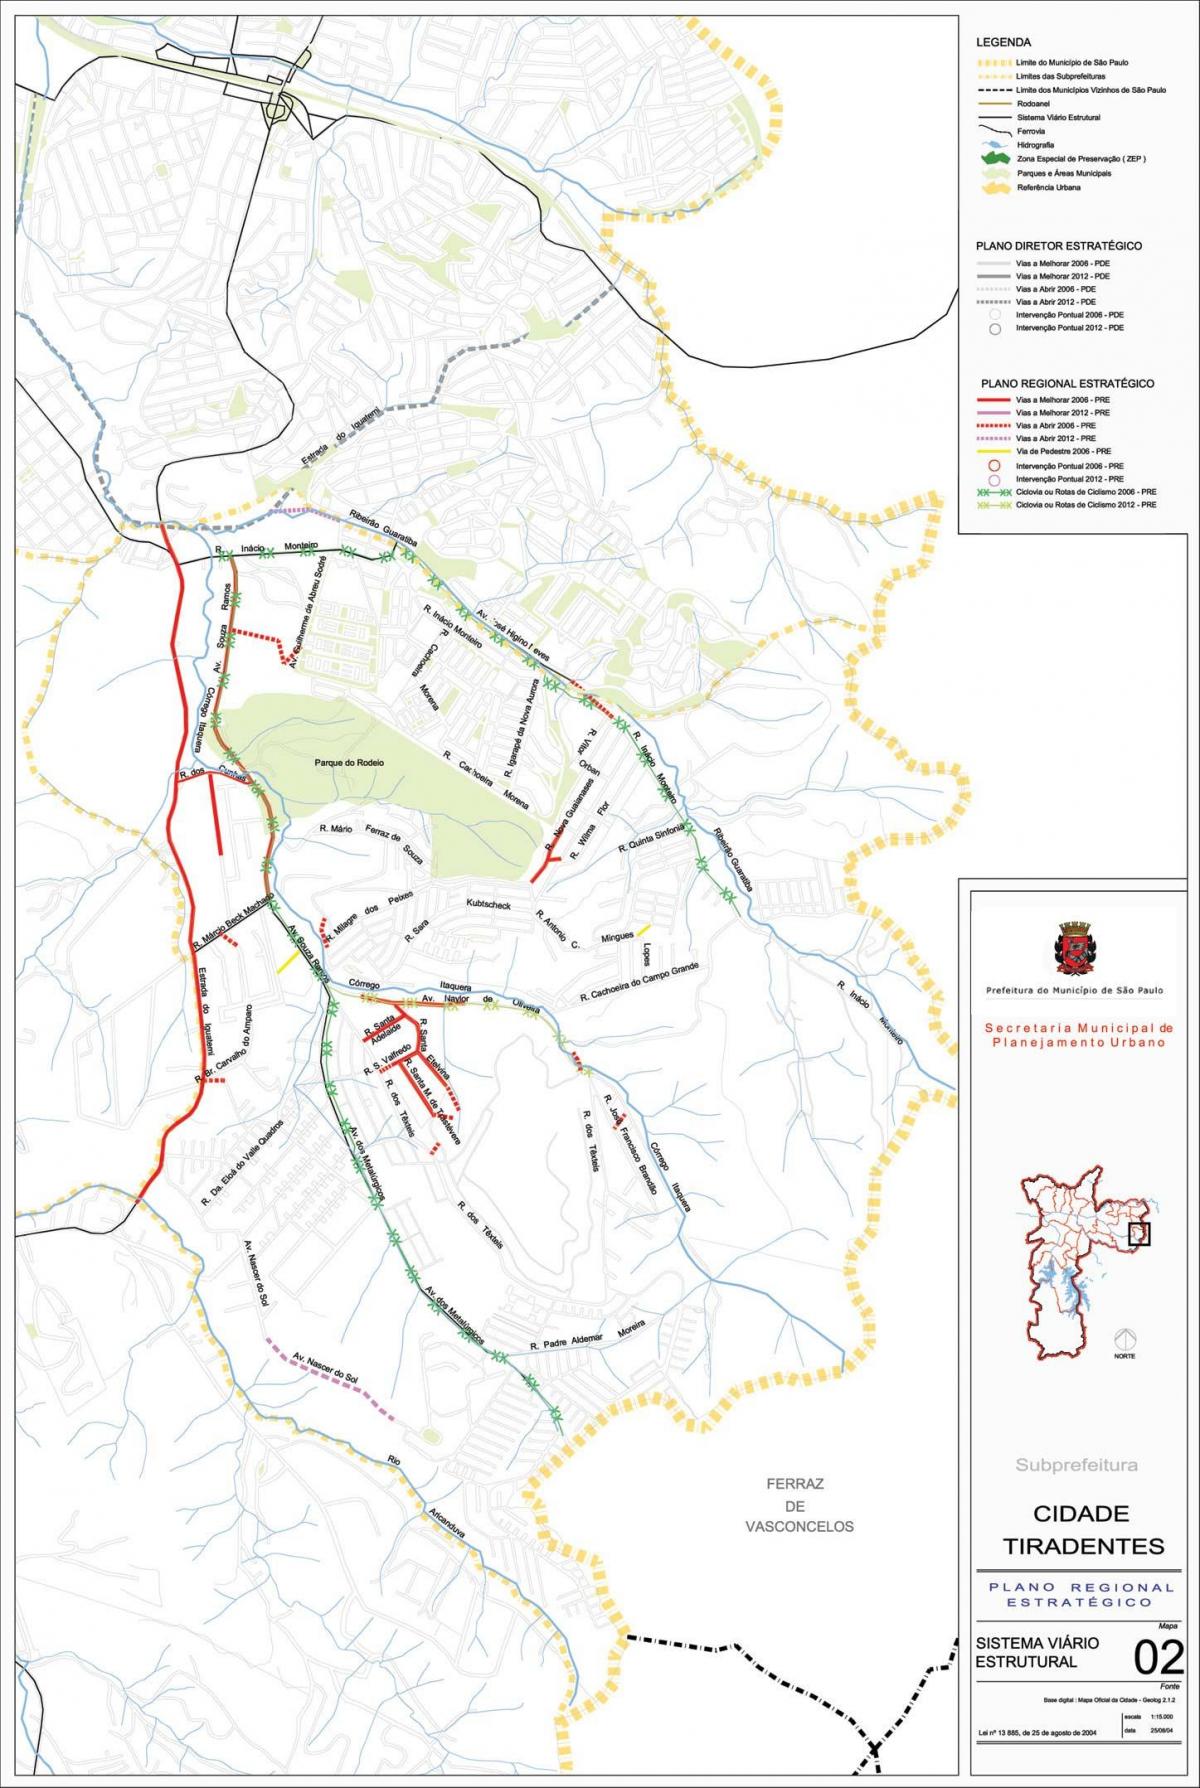 नक्शे के सिडेड तिरदेन्टेस साओ पाउलो - सड़कों